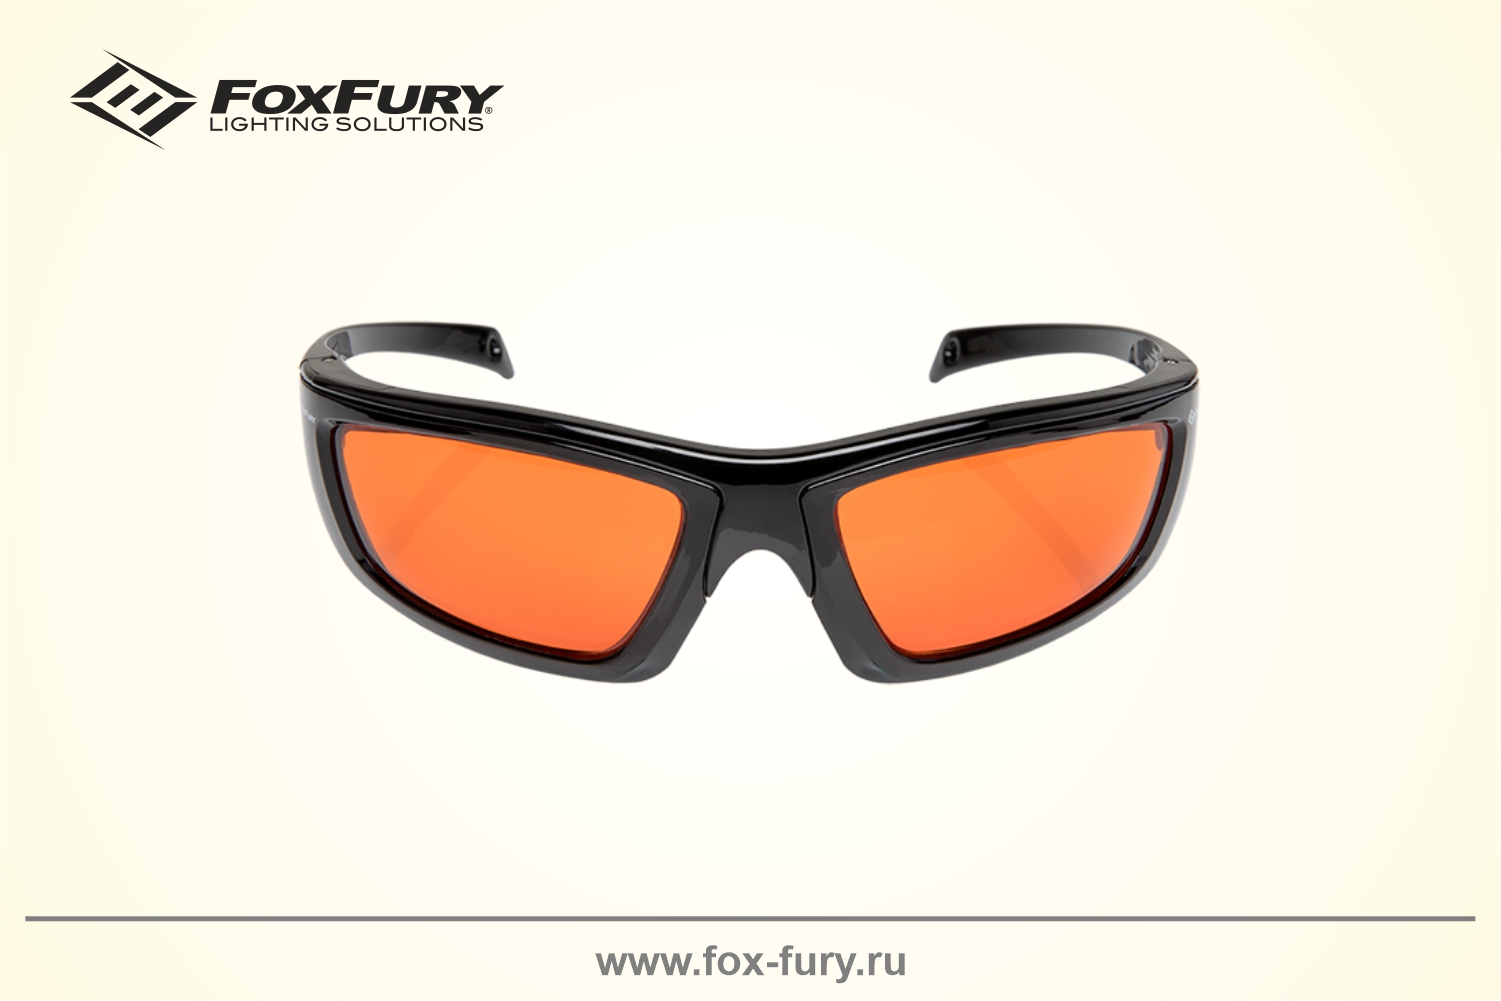 Очки для криминалистики FoxFury CS EYE оранжевые 600-1110